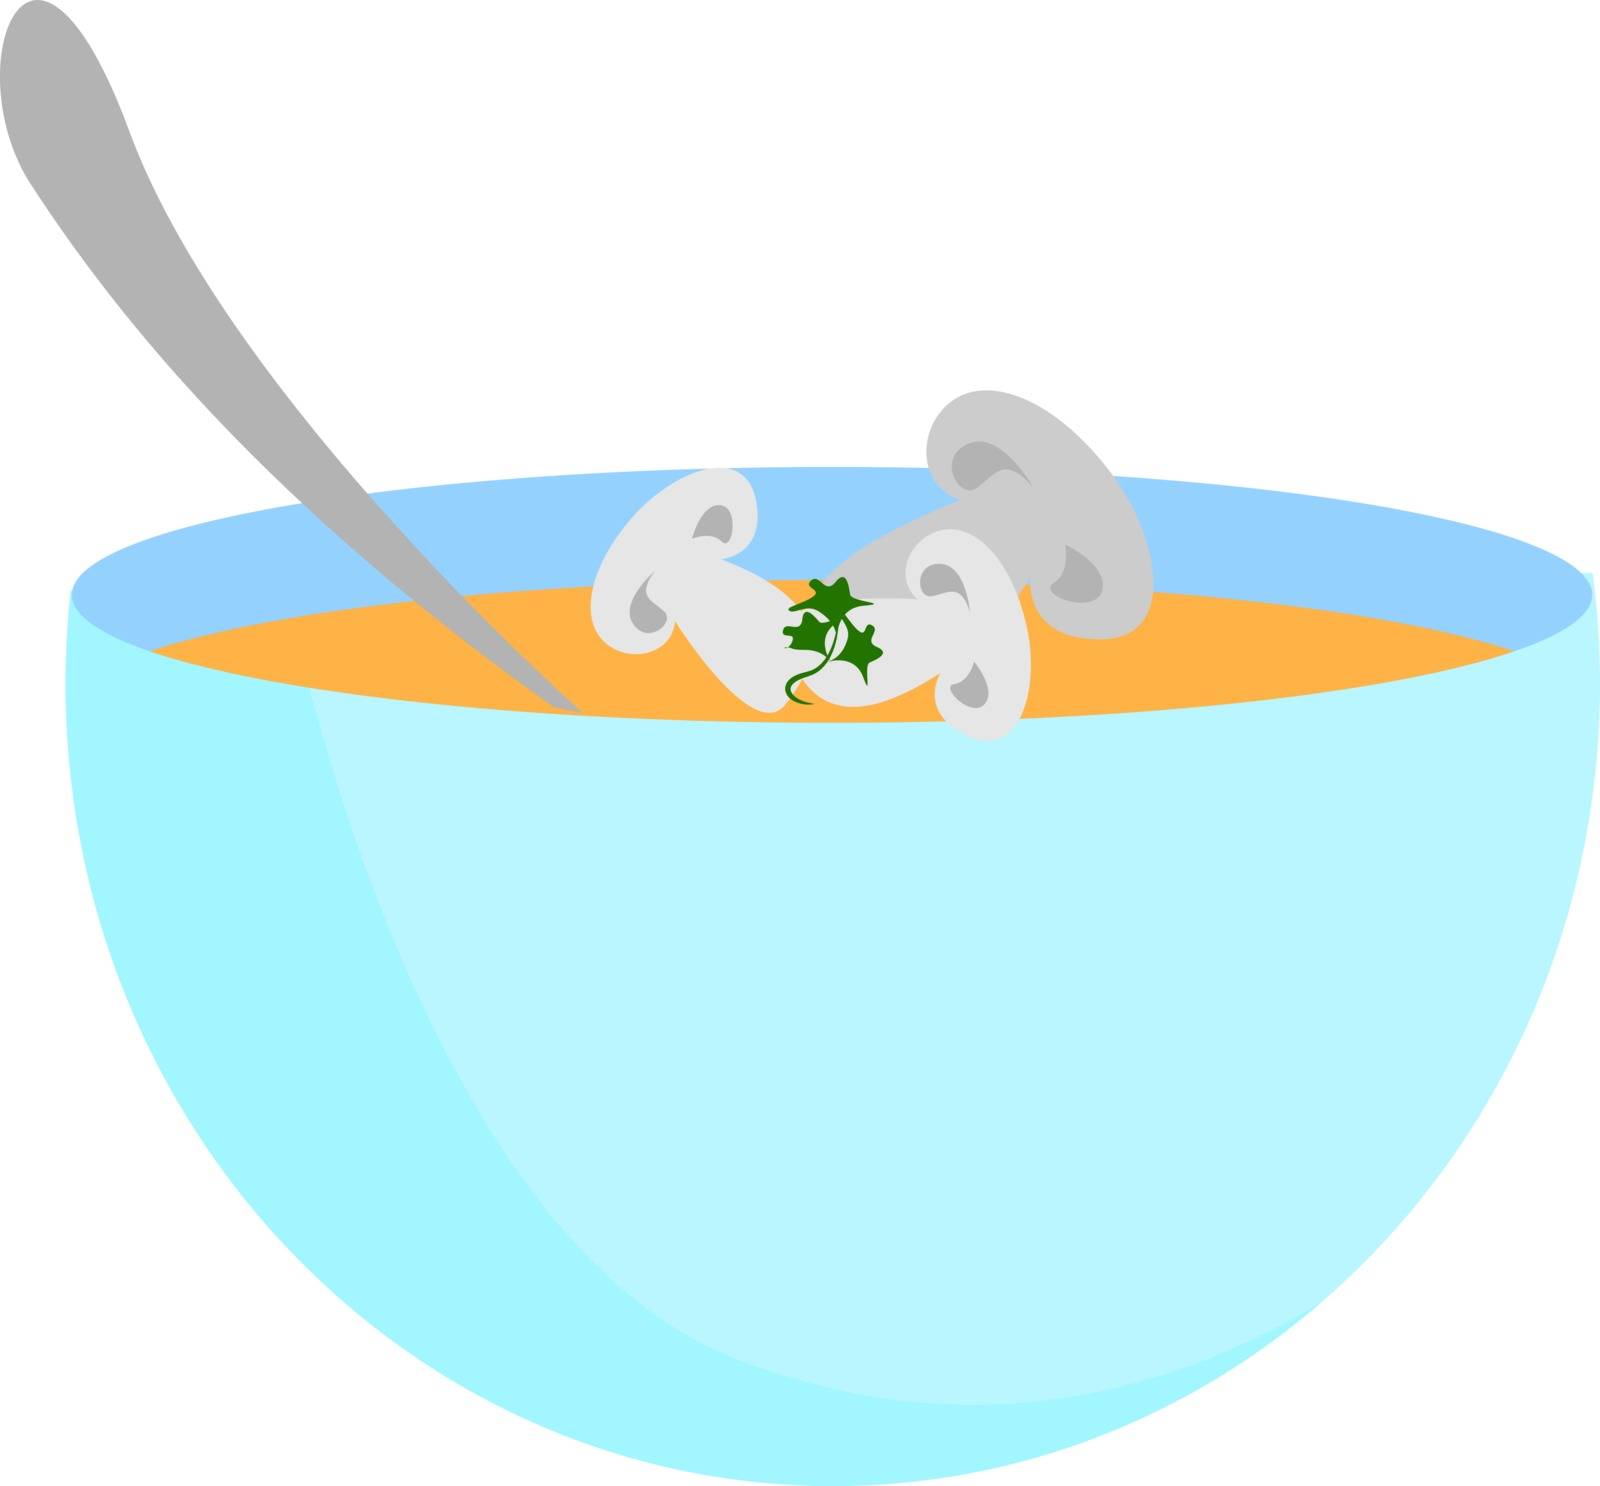 Mushroom in bowl, illustration, vector on white background. by Morphart